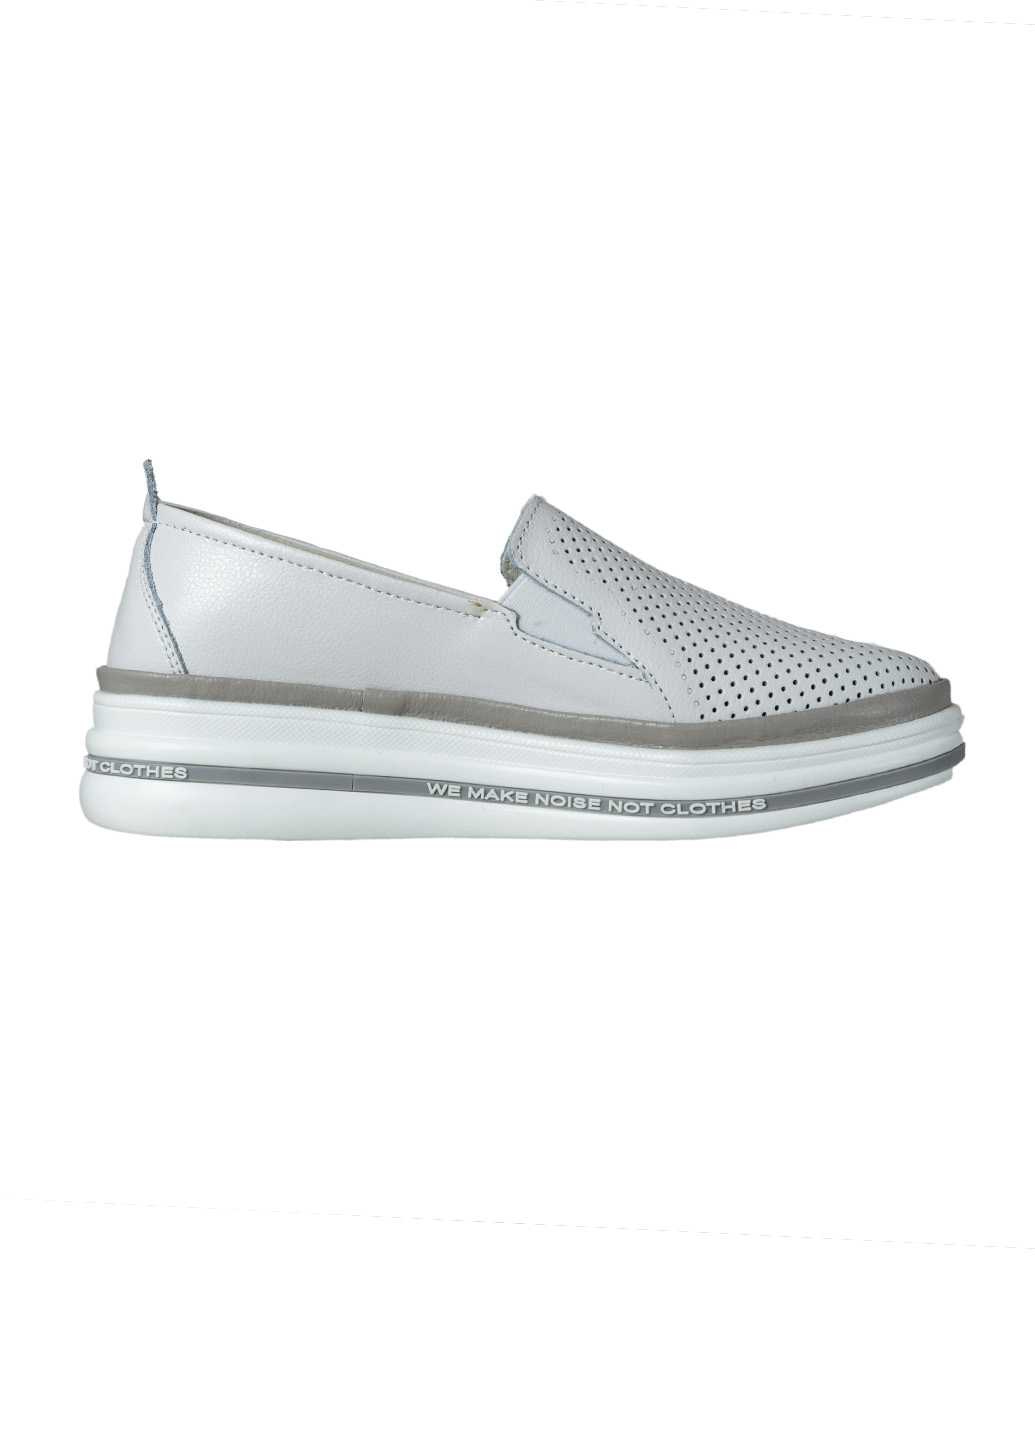 Жіночі туфлі Lifexpert з натуральної шкіри перфорація білого-сірого кольору